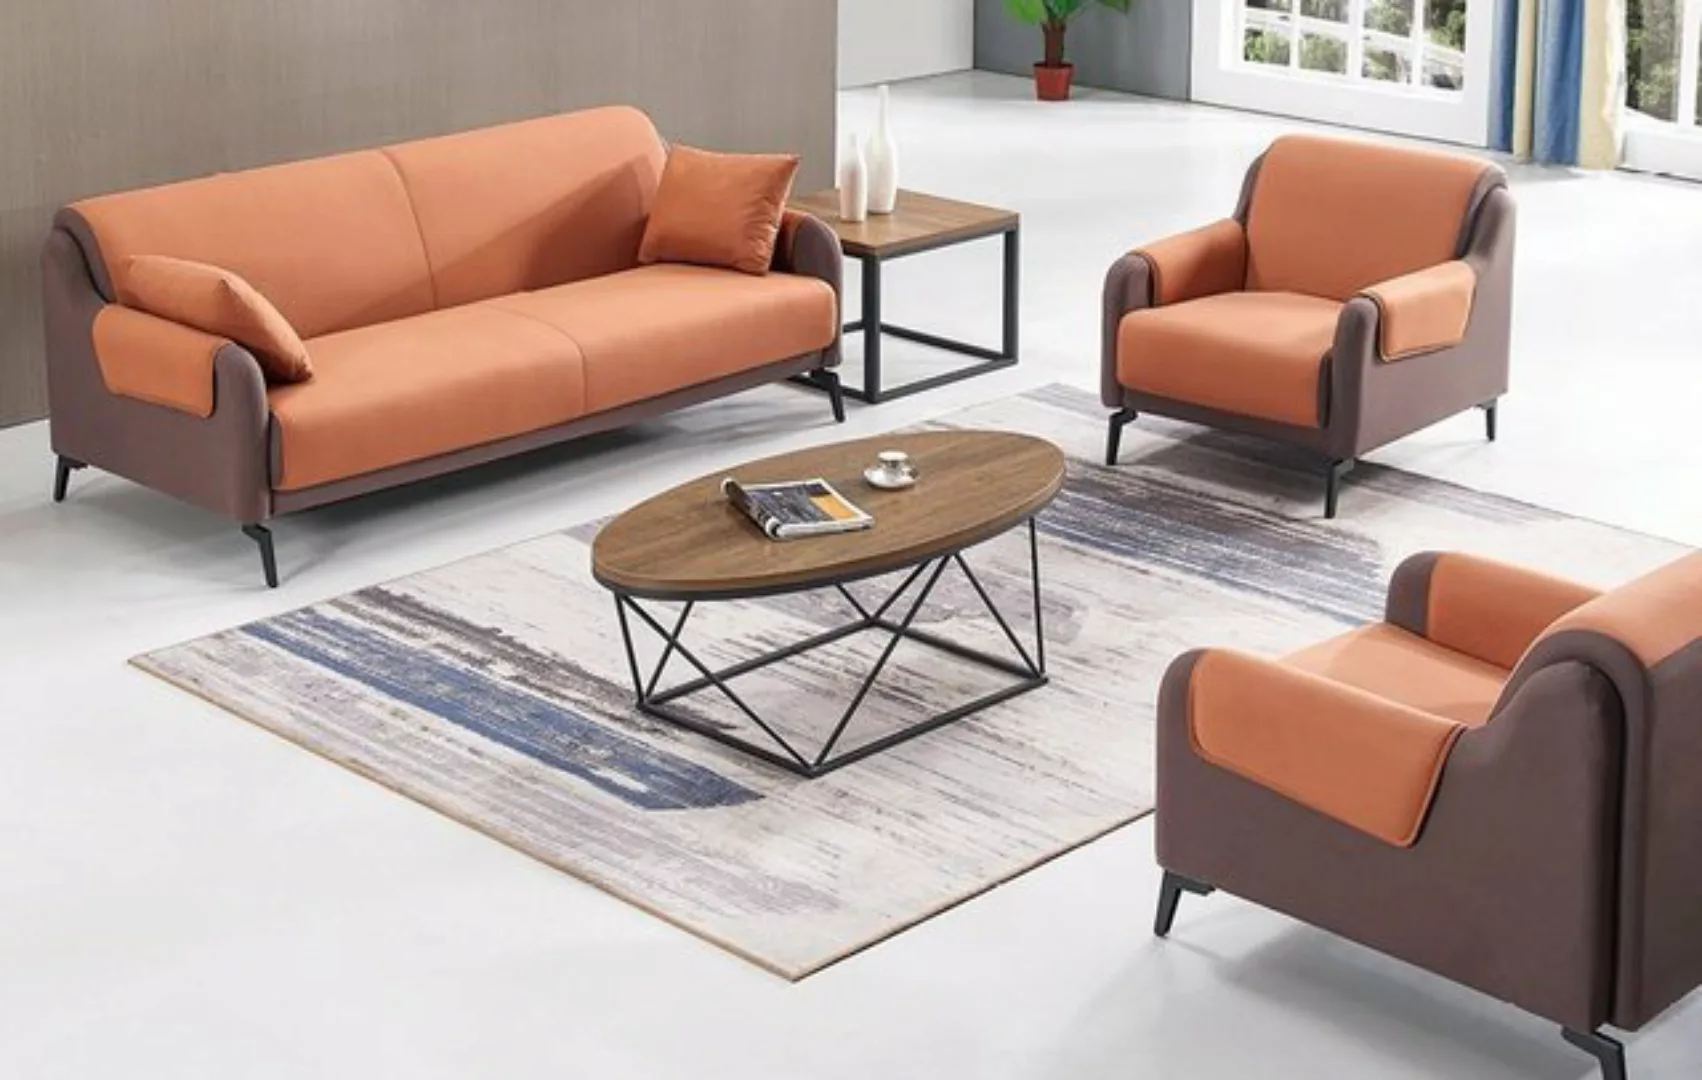 JVmoebel Sofa Sofa Couch Polster Stoff Couchen Polster Garnitur 3+1+1 Sitze günstig online kaufen